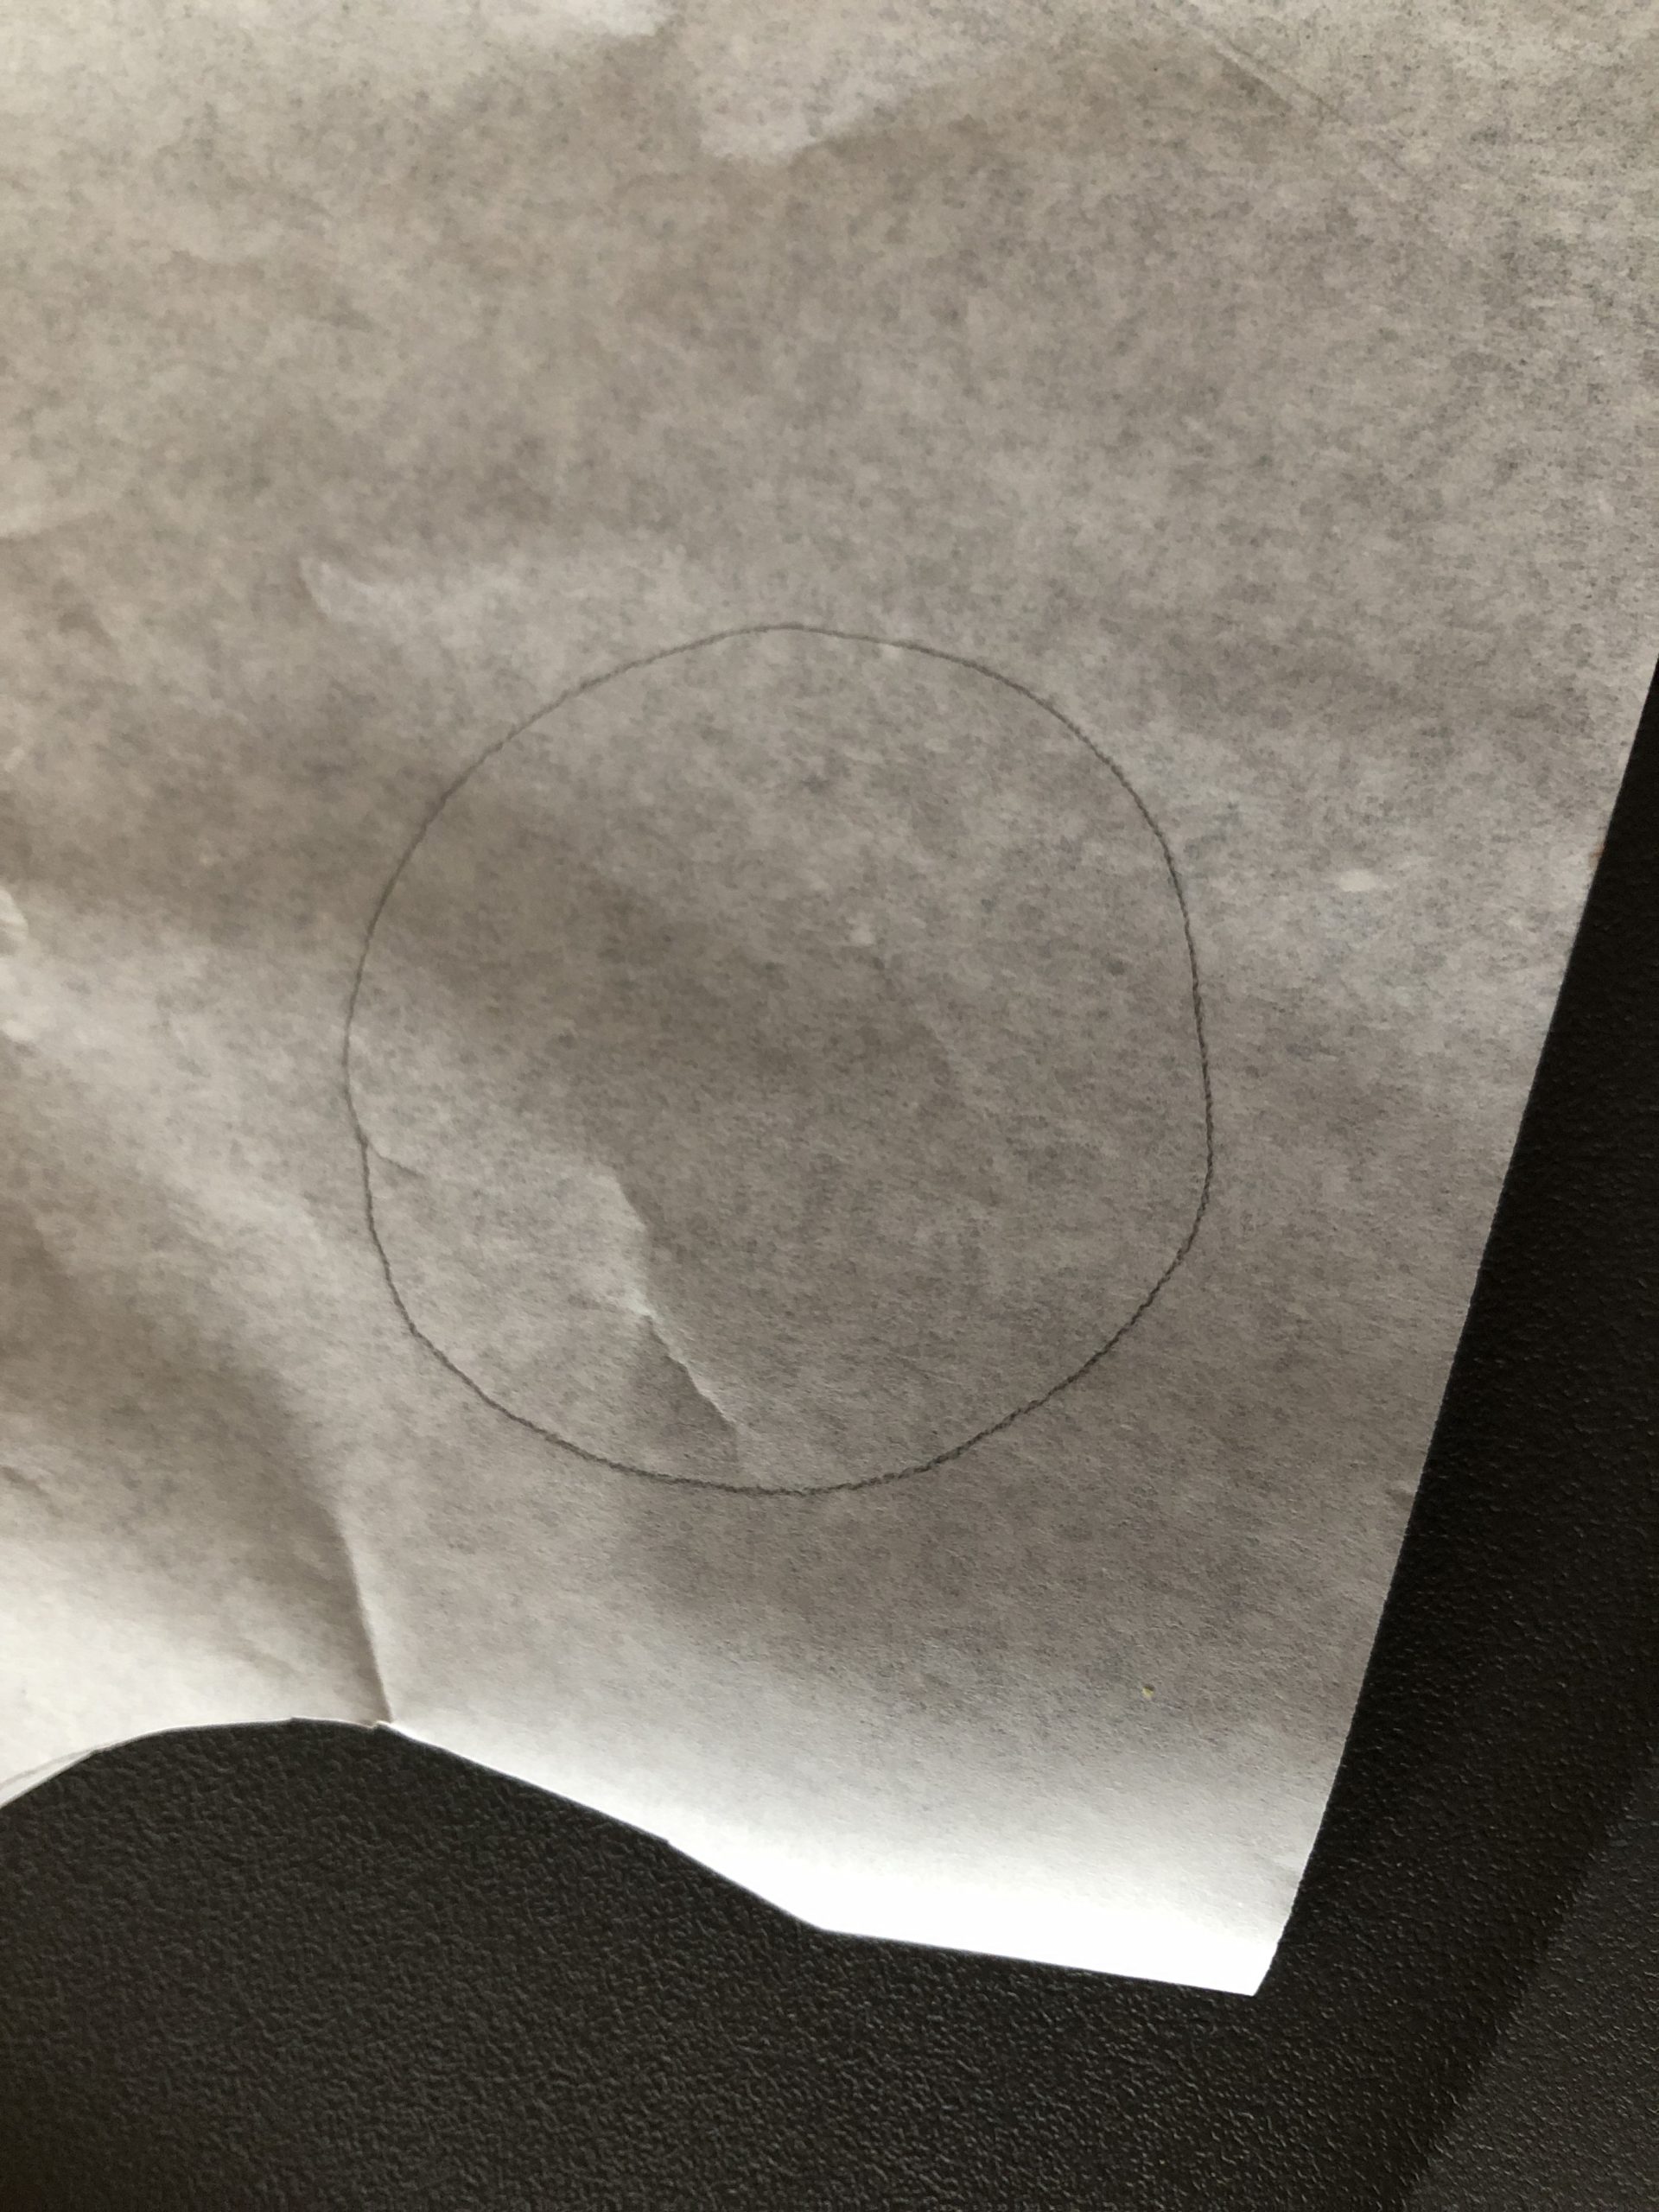 Bild zum Schritt 7 für die Kinder-Beschäftigung: 'Übertragt die Größe des ausgeschnittenen Kreises auf ein Butterbrotpapier. Gebt...'